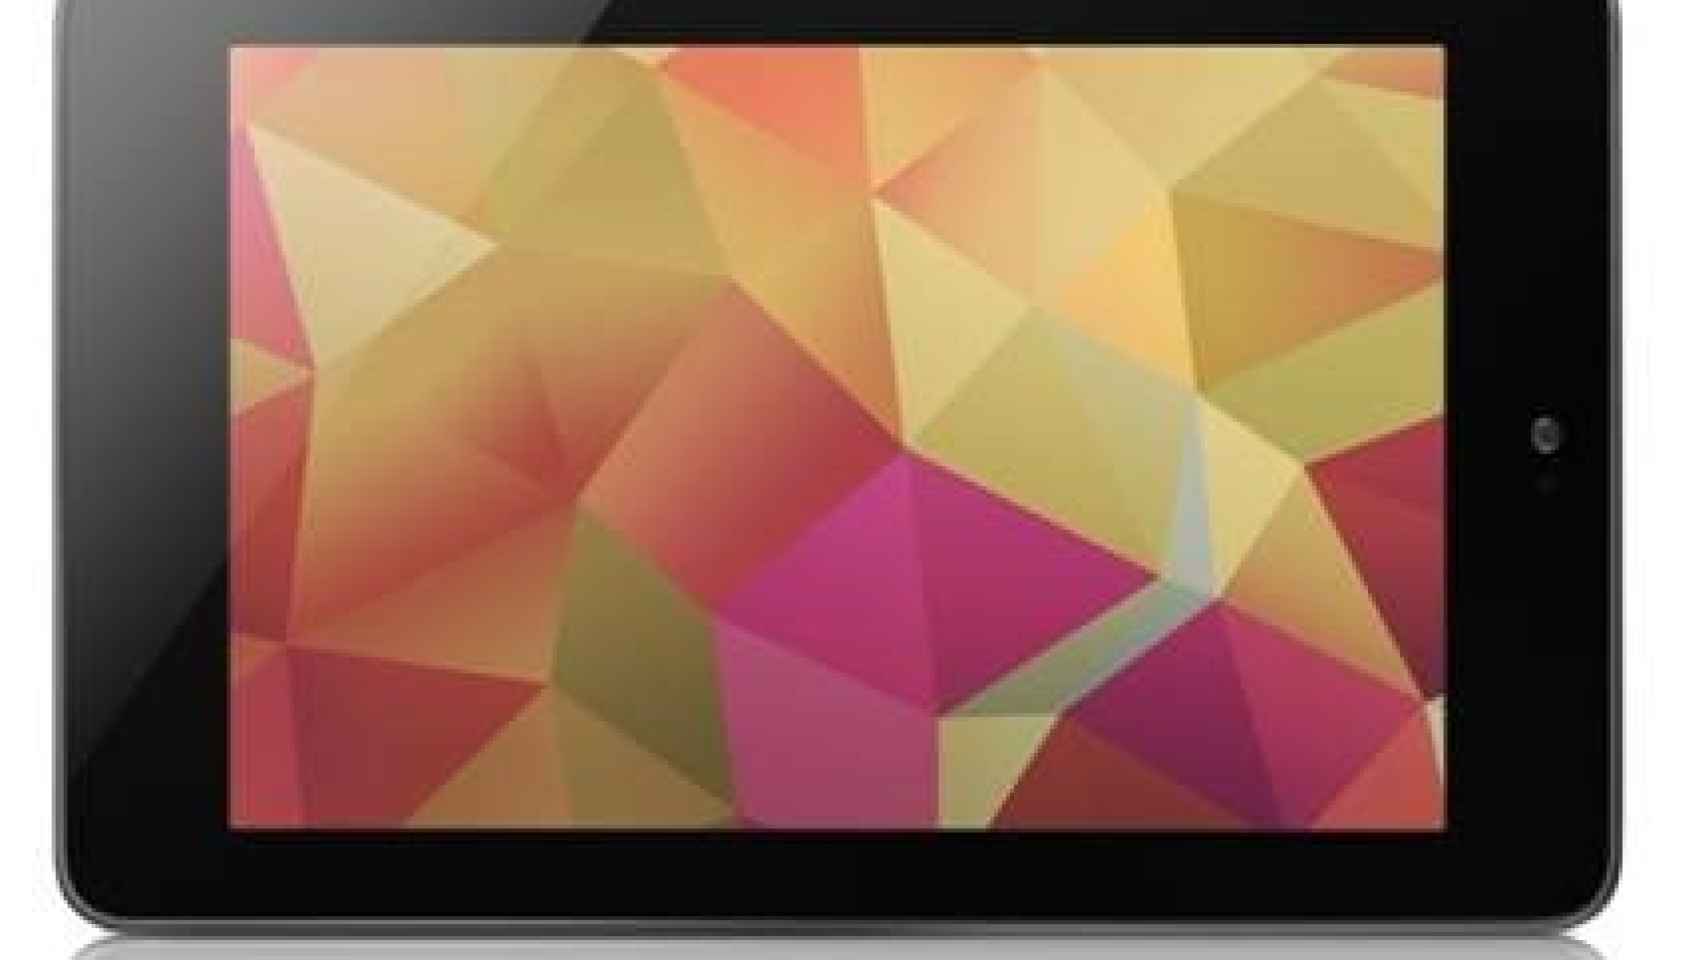 Los accesorios oficiales para Nexus 7: Dock Station, Travel Cover y fundas de colores